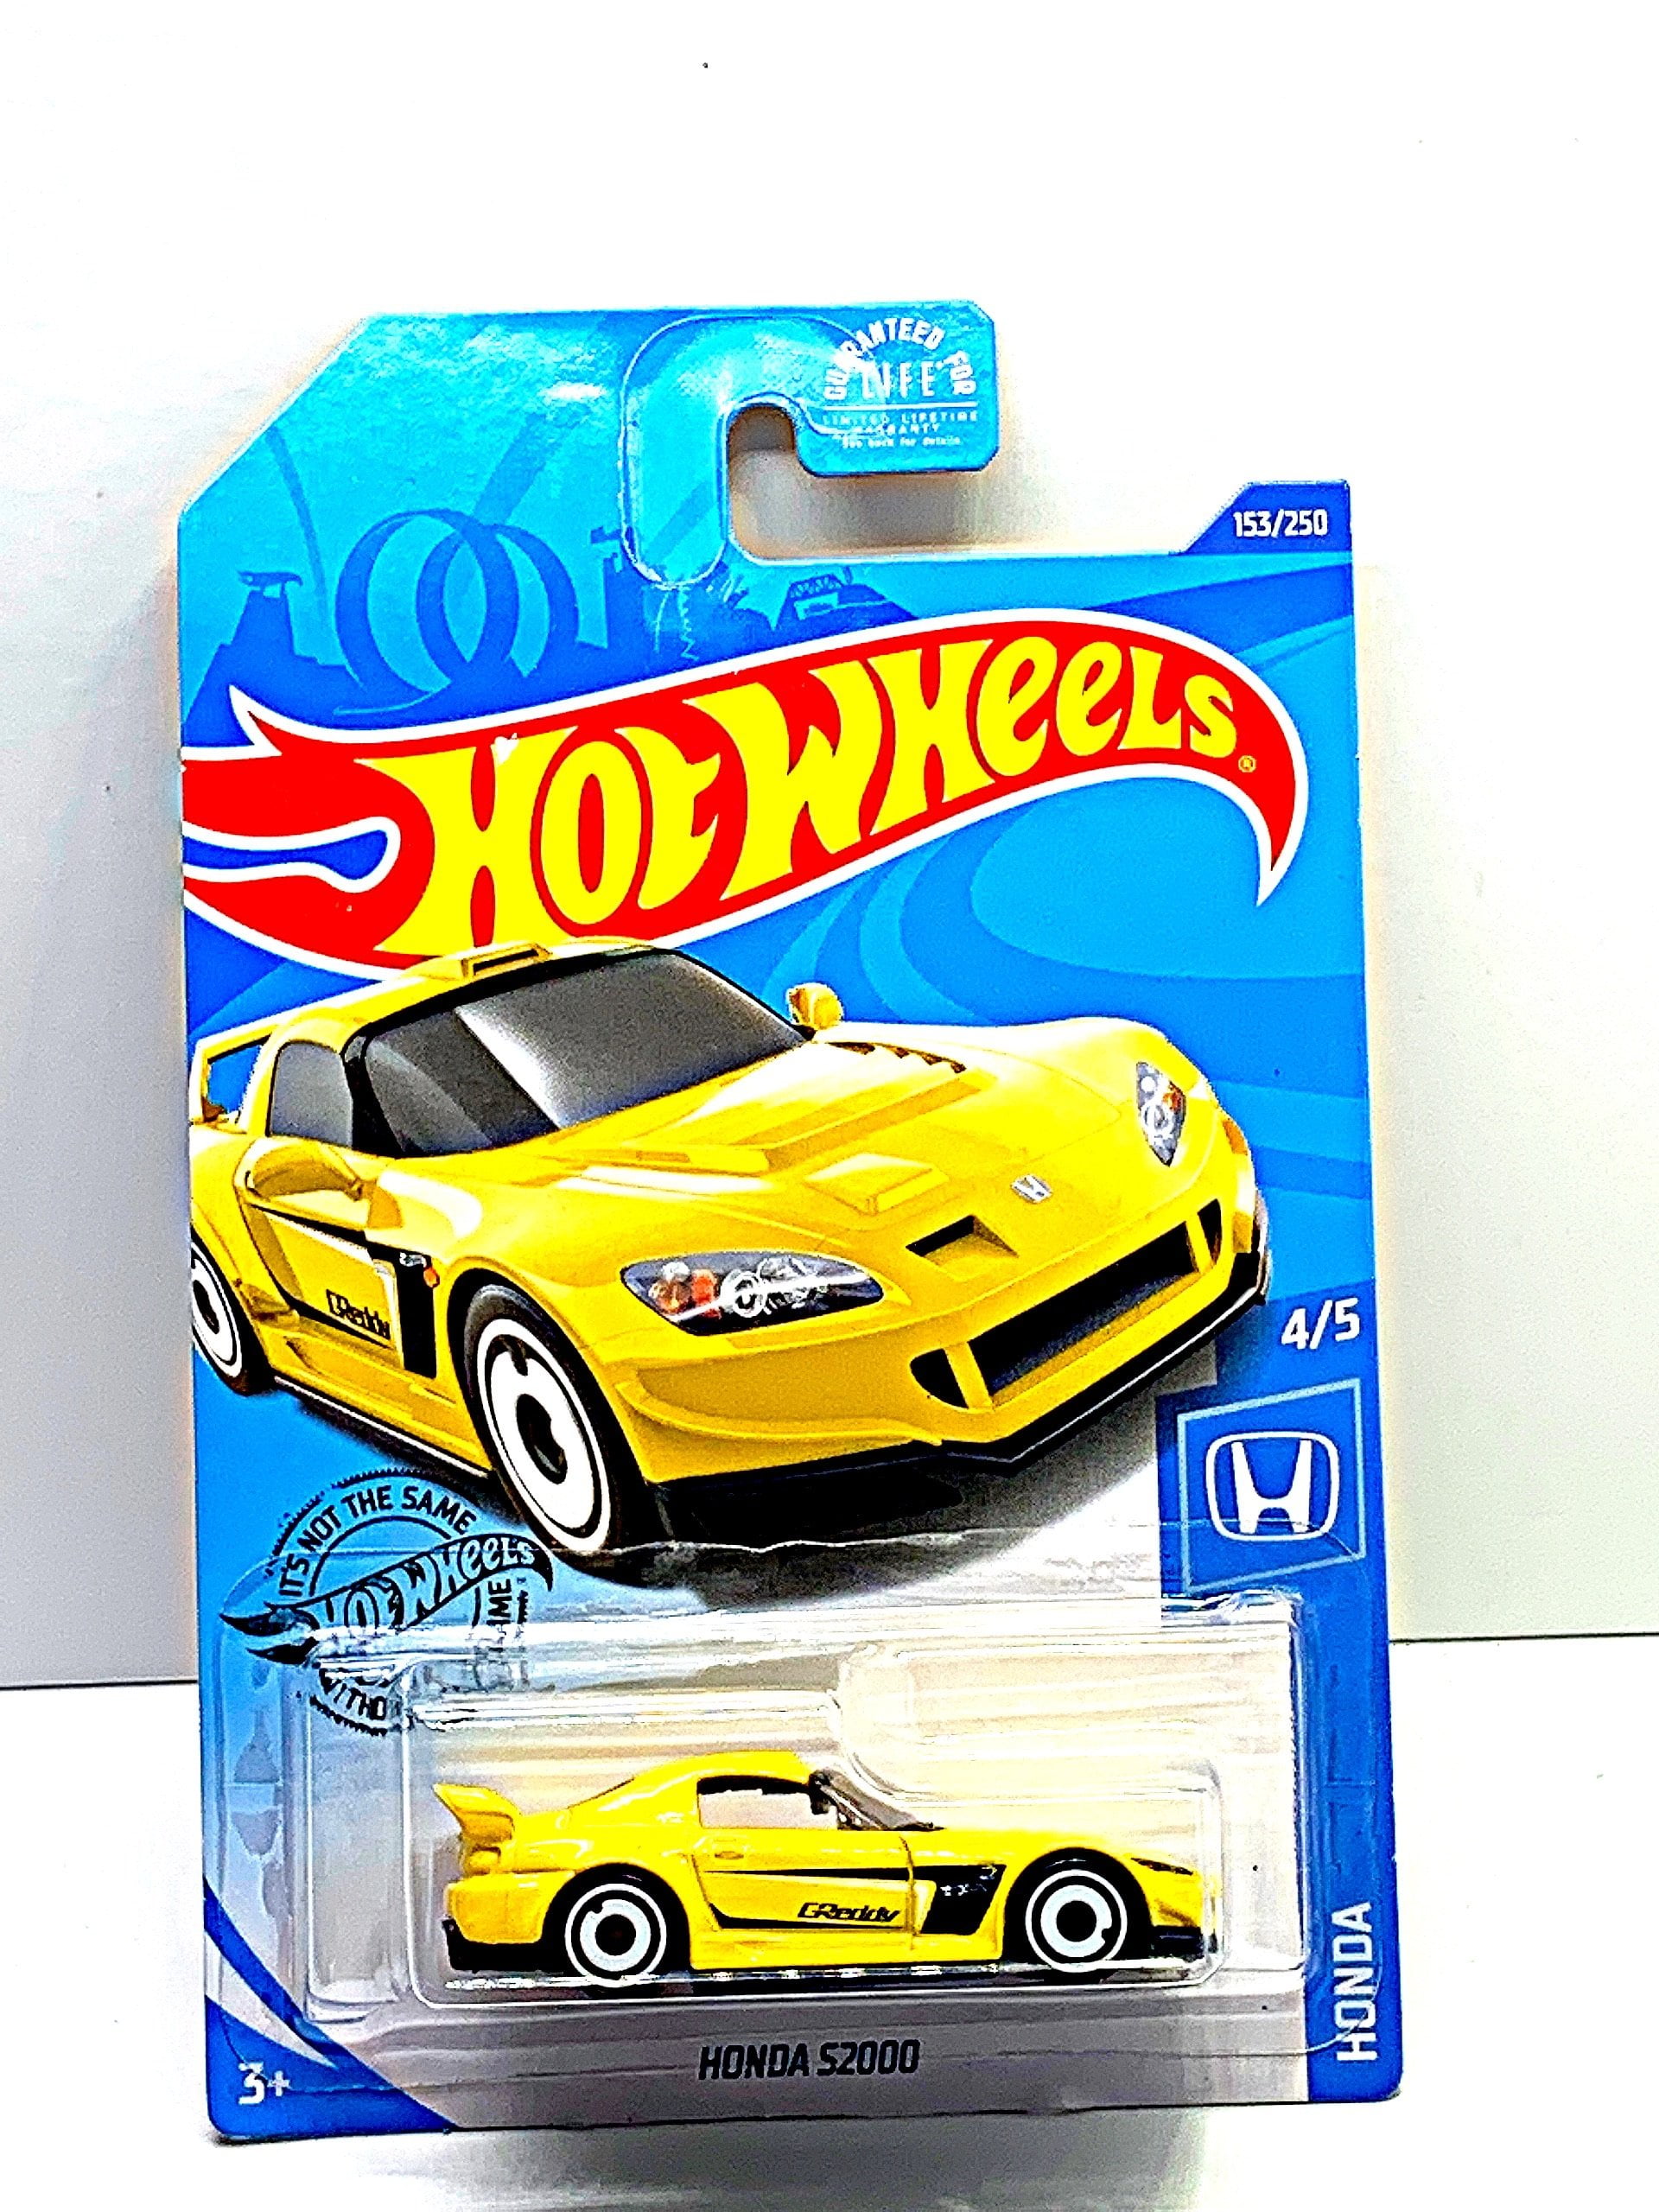 Hot Wheels Honda series HONDA S2000 yellow 4/5 153/250